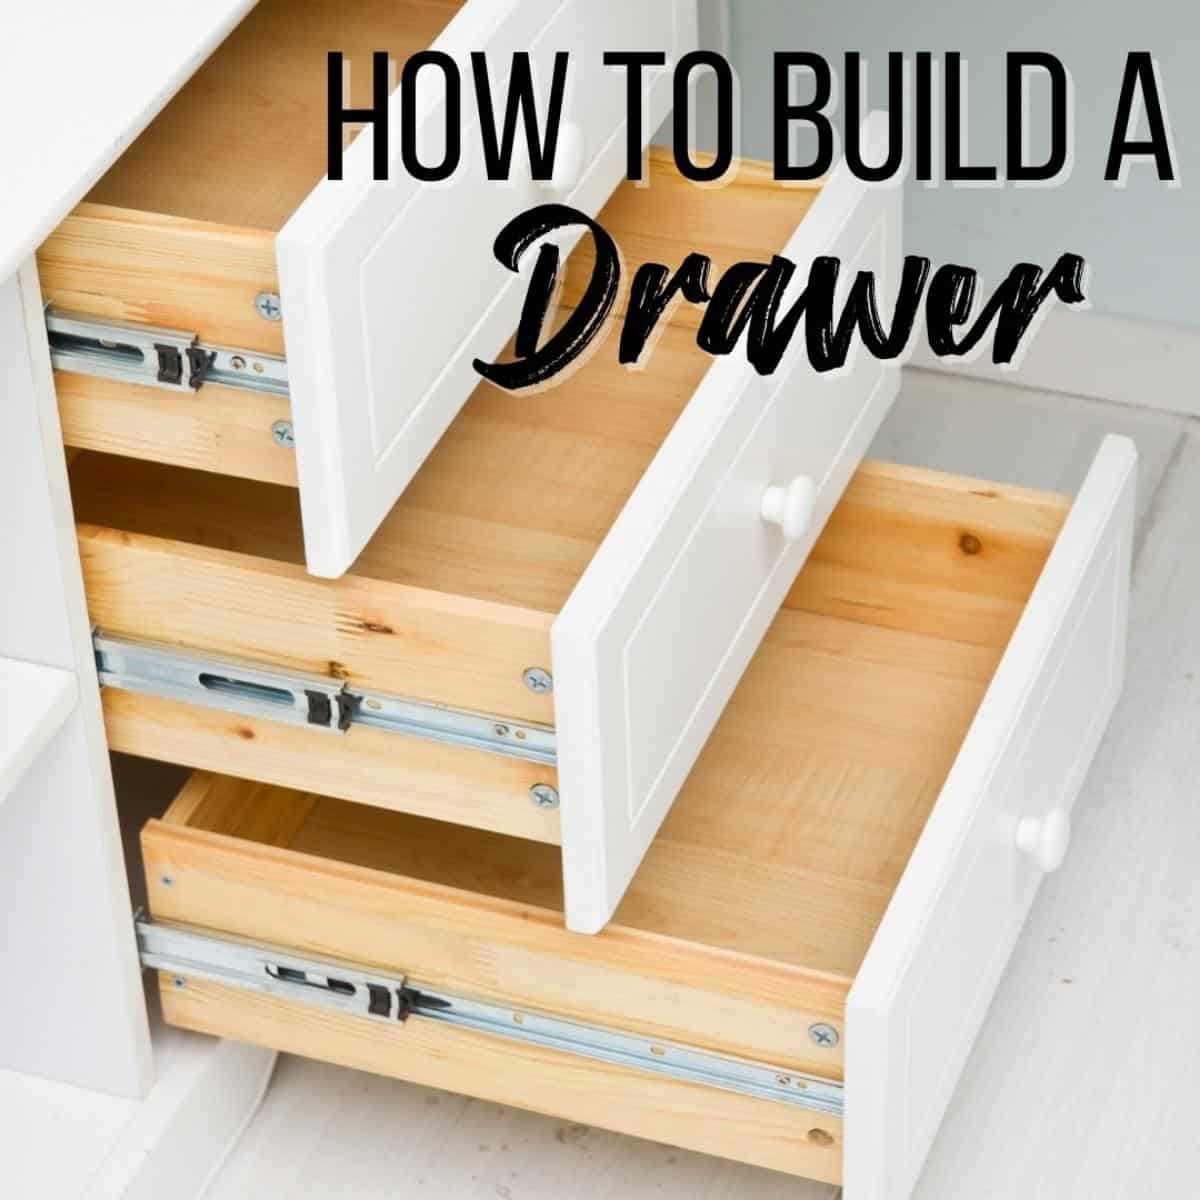 Build a DIY Drawer Organizer - Build Basic